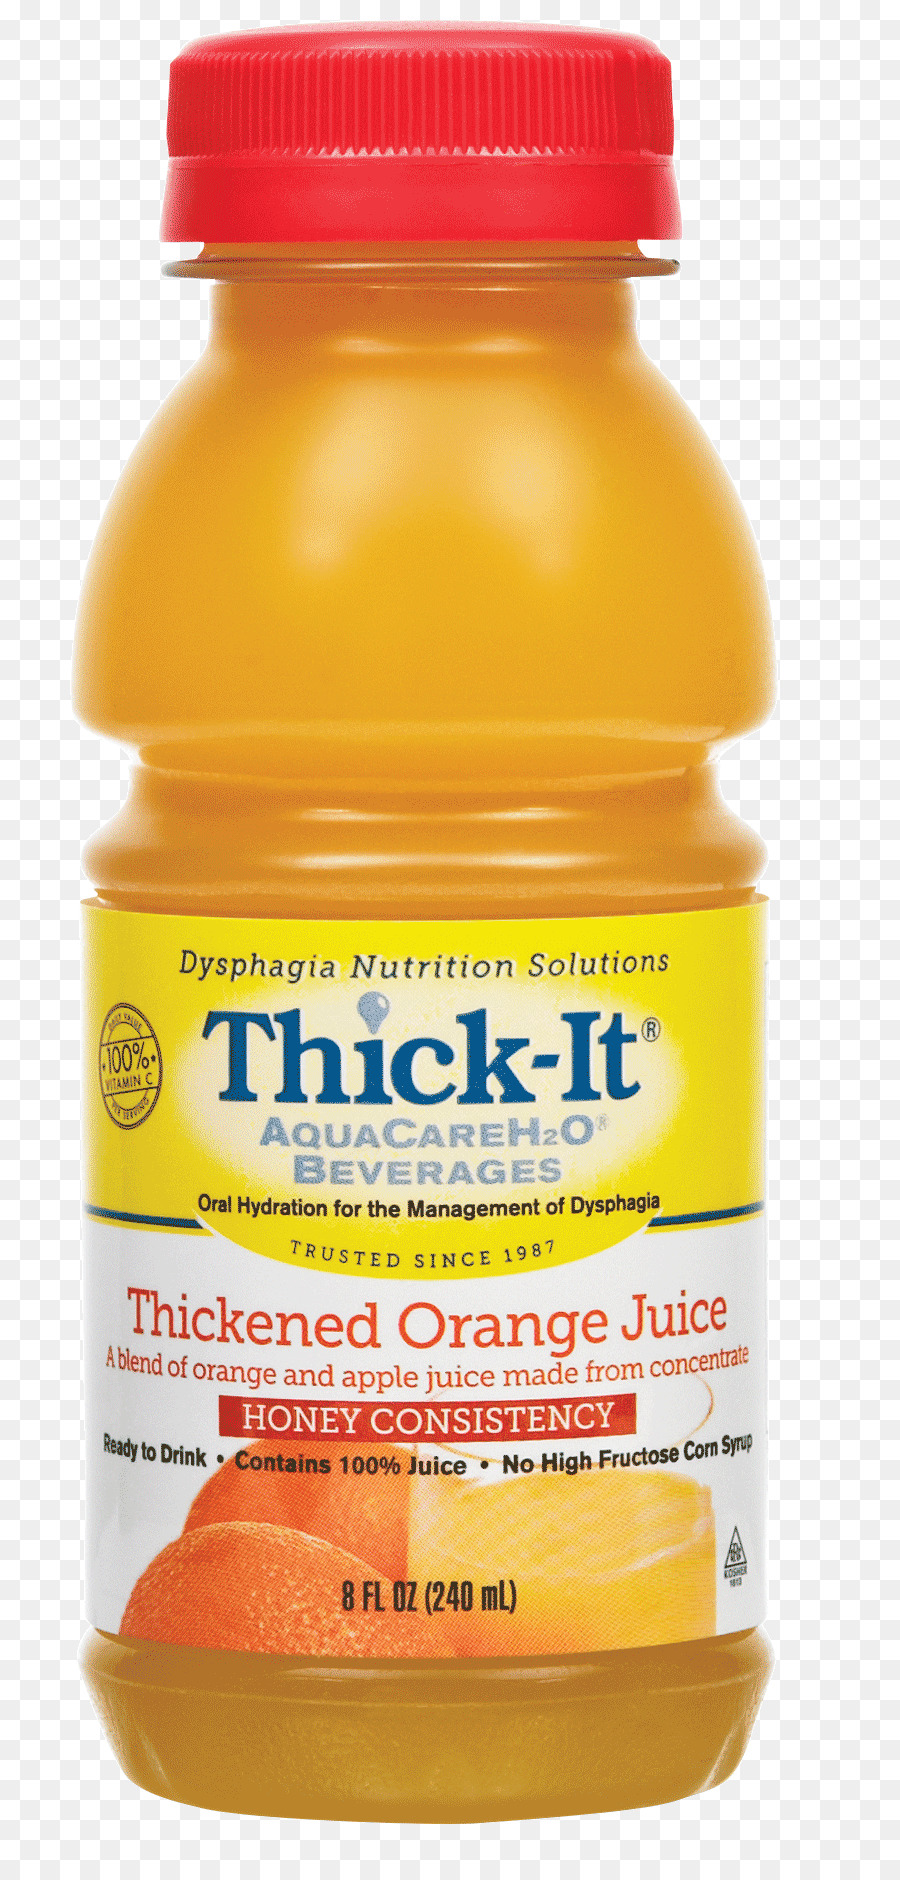 شراب البرتقال，عصير البرتقال PNG